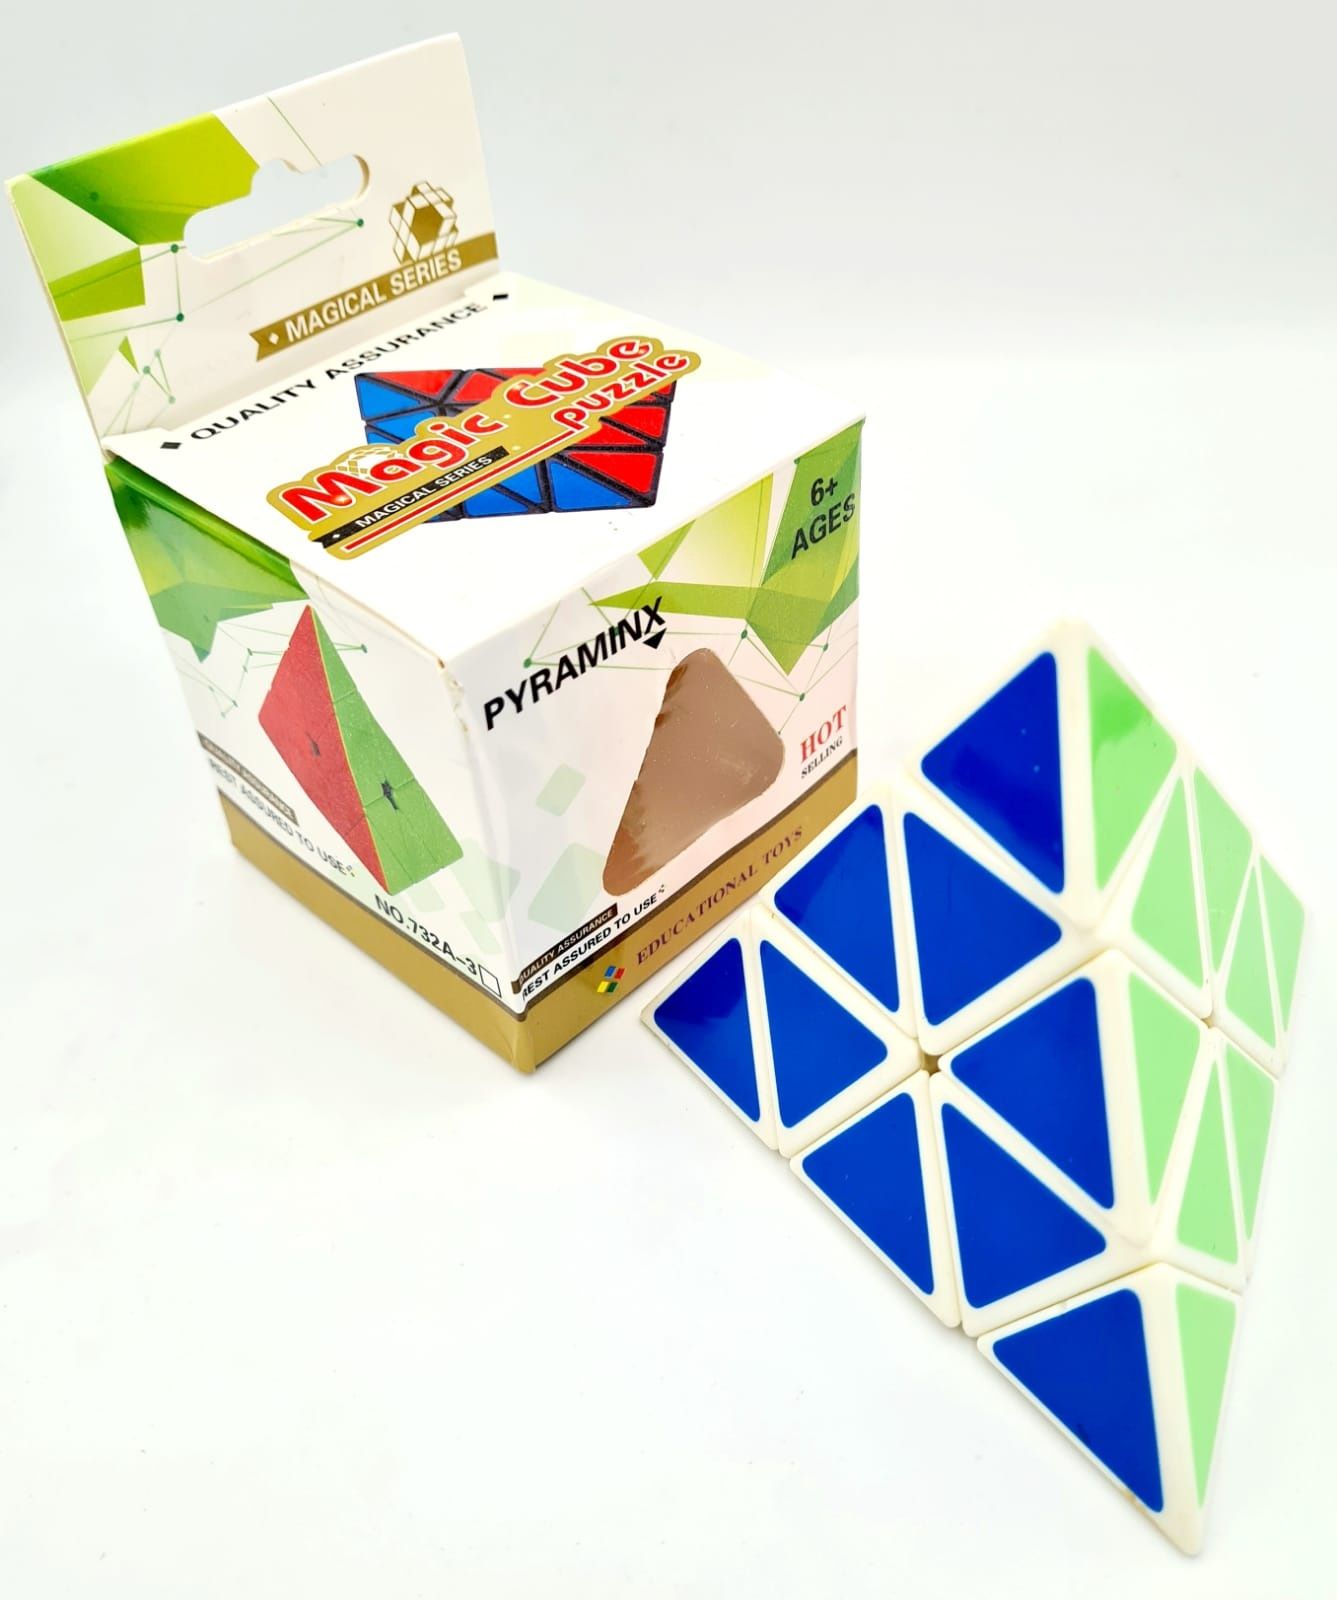 Kostka logiczna układanka trójkąt w stylu Rubika nowa